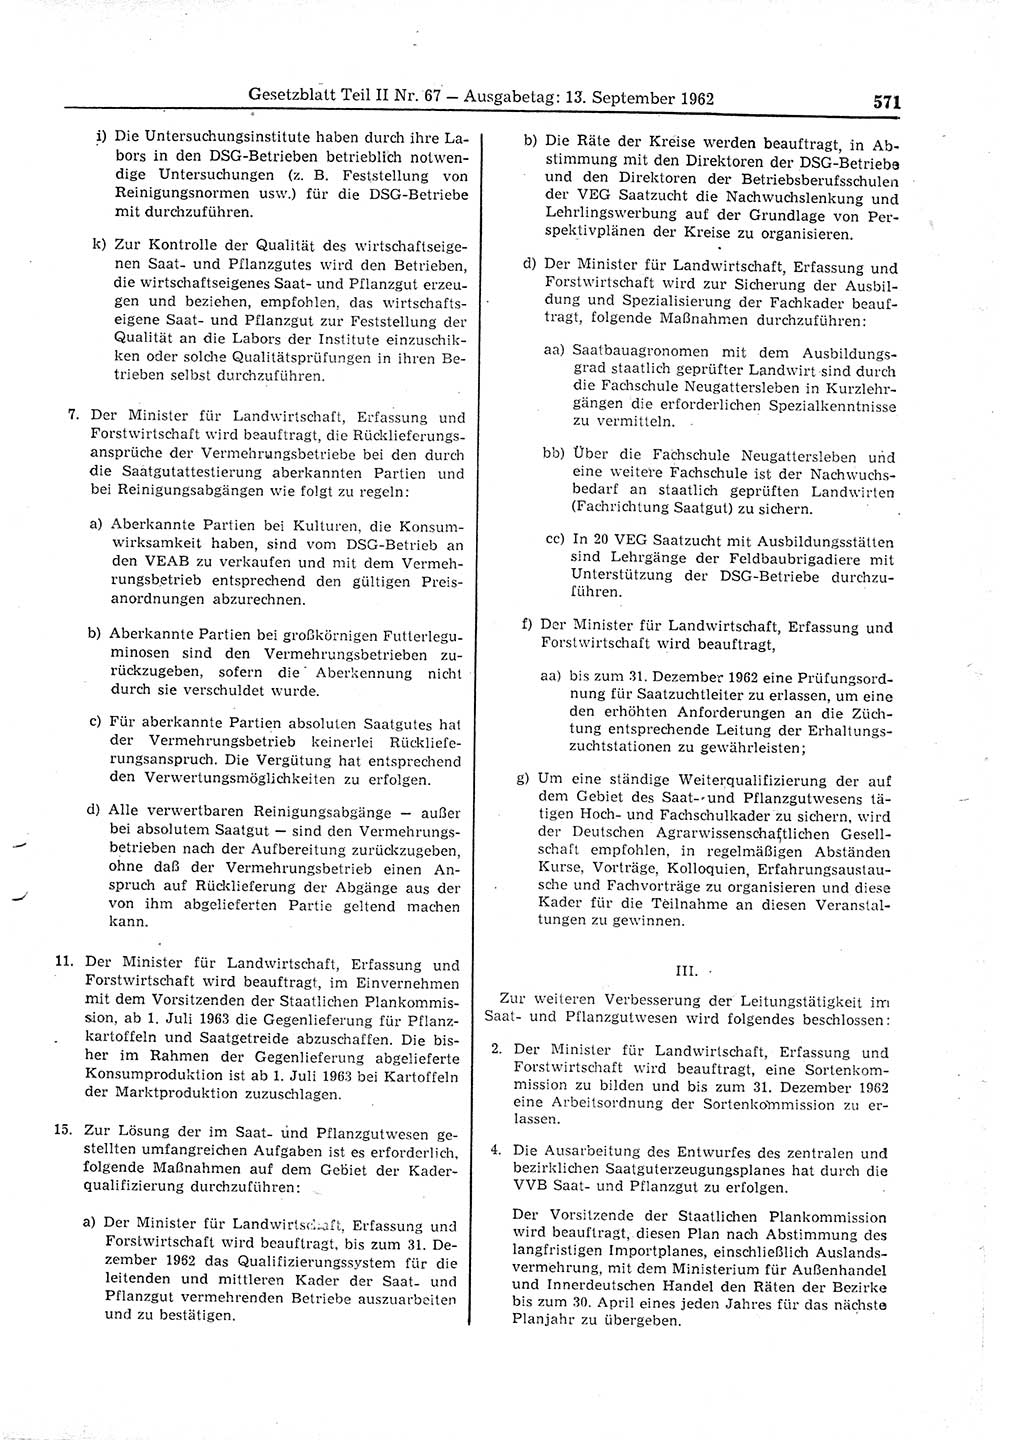 Gesetzblatt (GBl.) der Deutschen Demokratischen Republik (DDR) Teil ⅠⅠ 1962, Seite 571 (GBl. DDR ⅠⅠ 1962, S. 571)